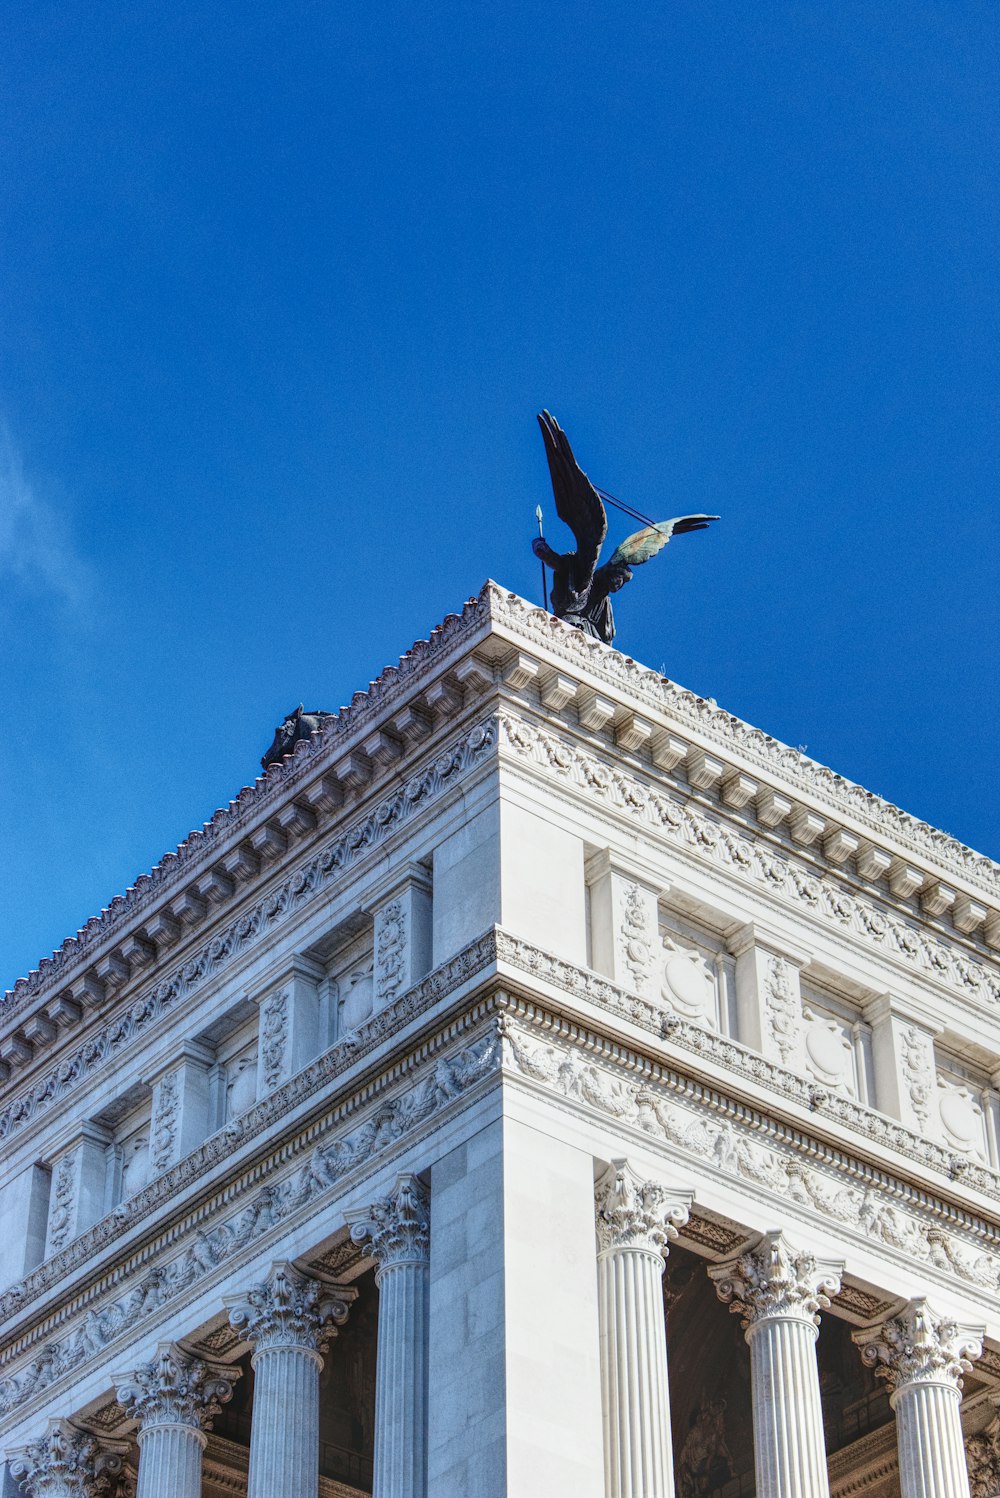 昼間、白いコンクリートの建物の上を飛ぶ黒い鳥